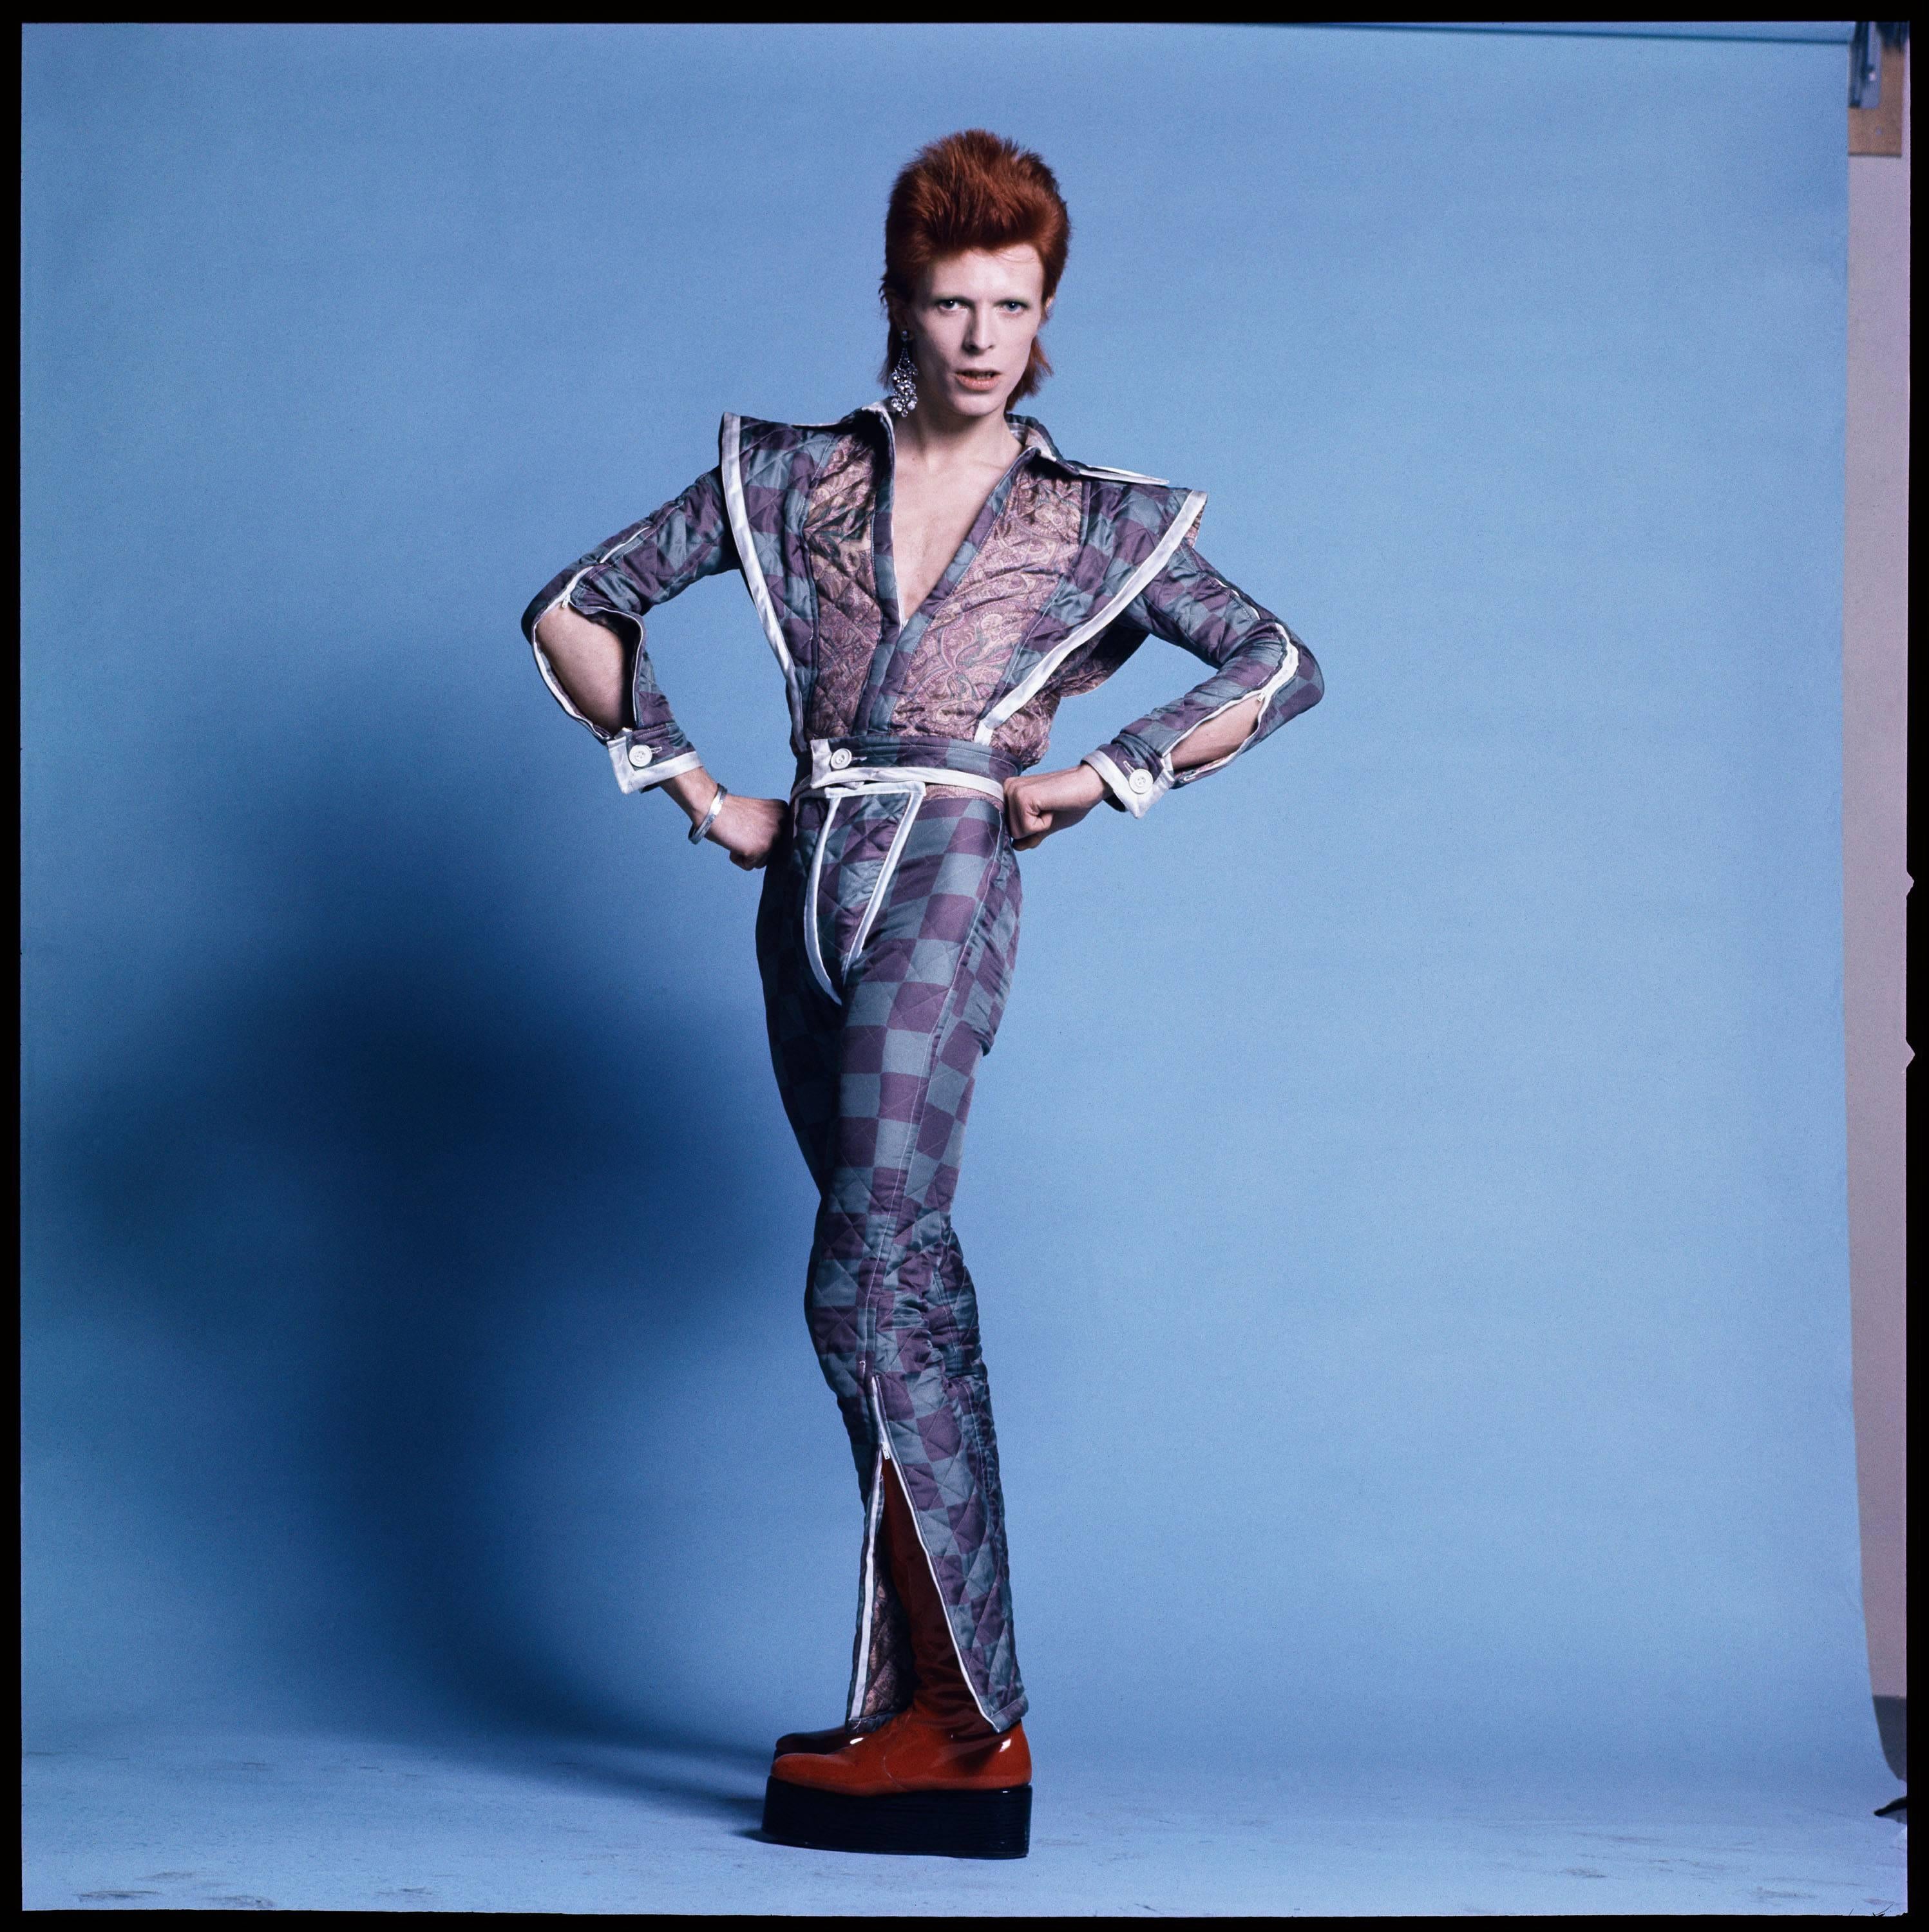 Richard Imrie Portrait Photograph - David Bowie 3